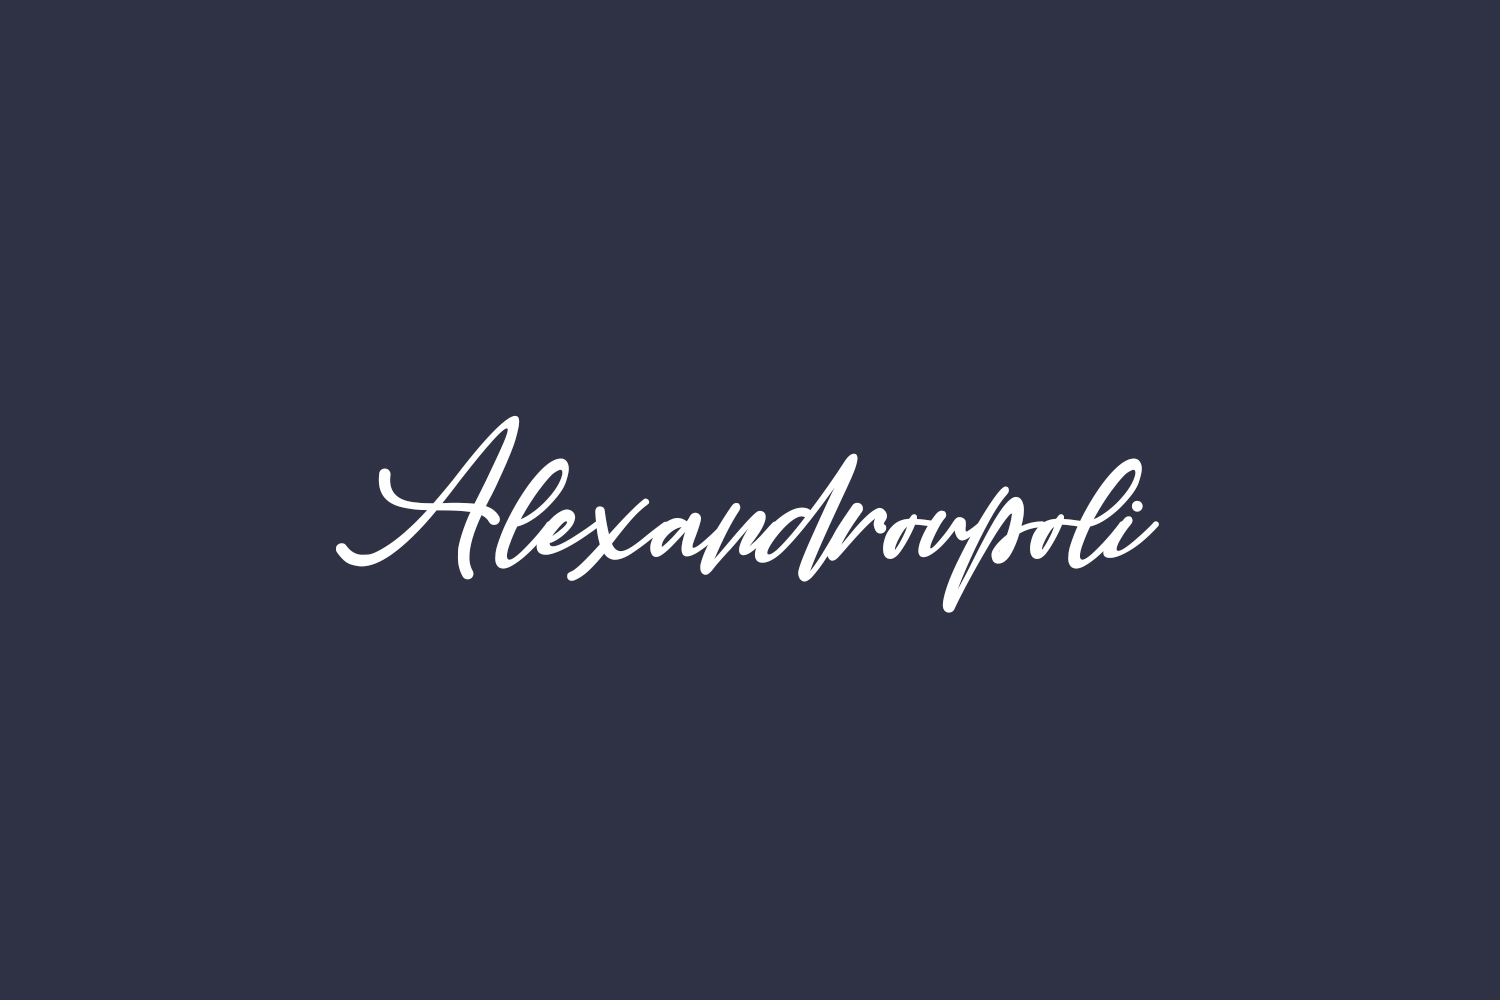 Alexandroupoli